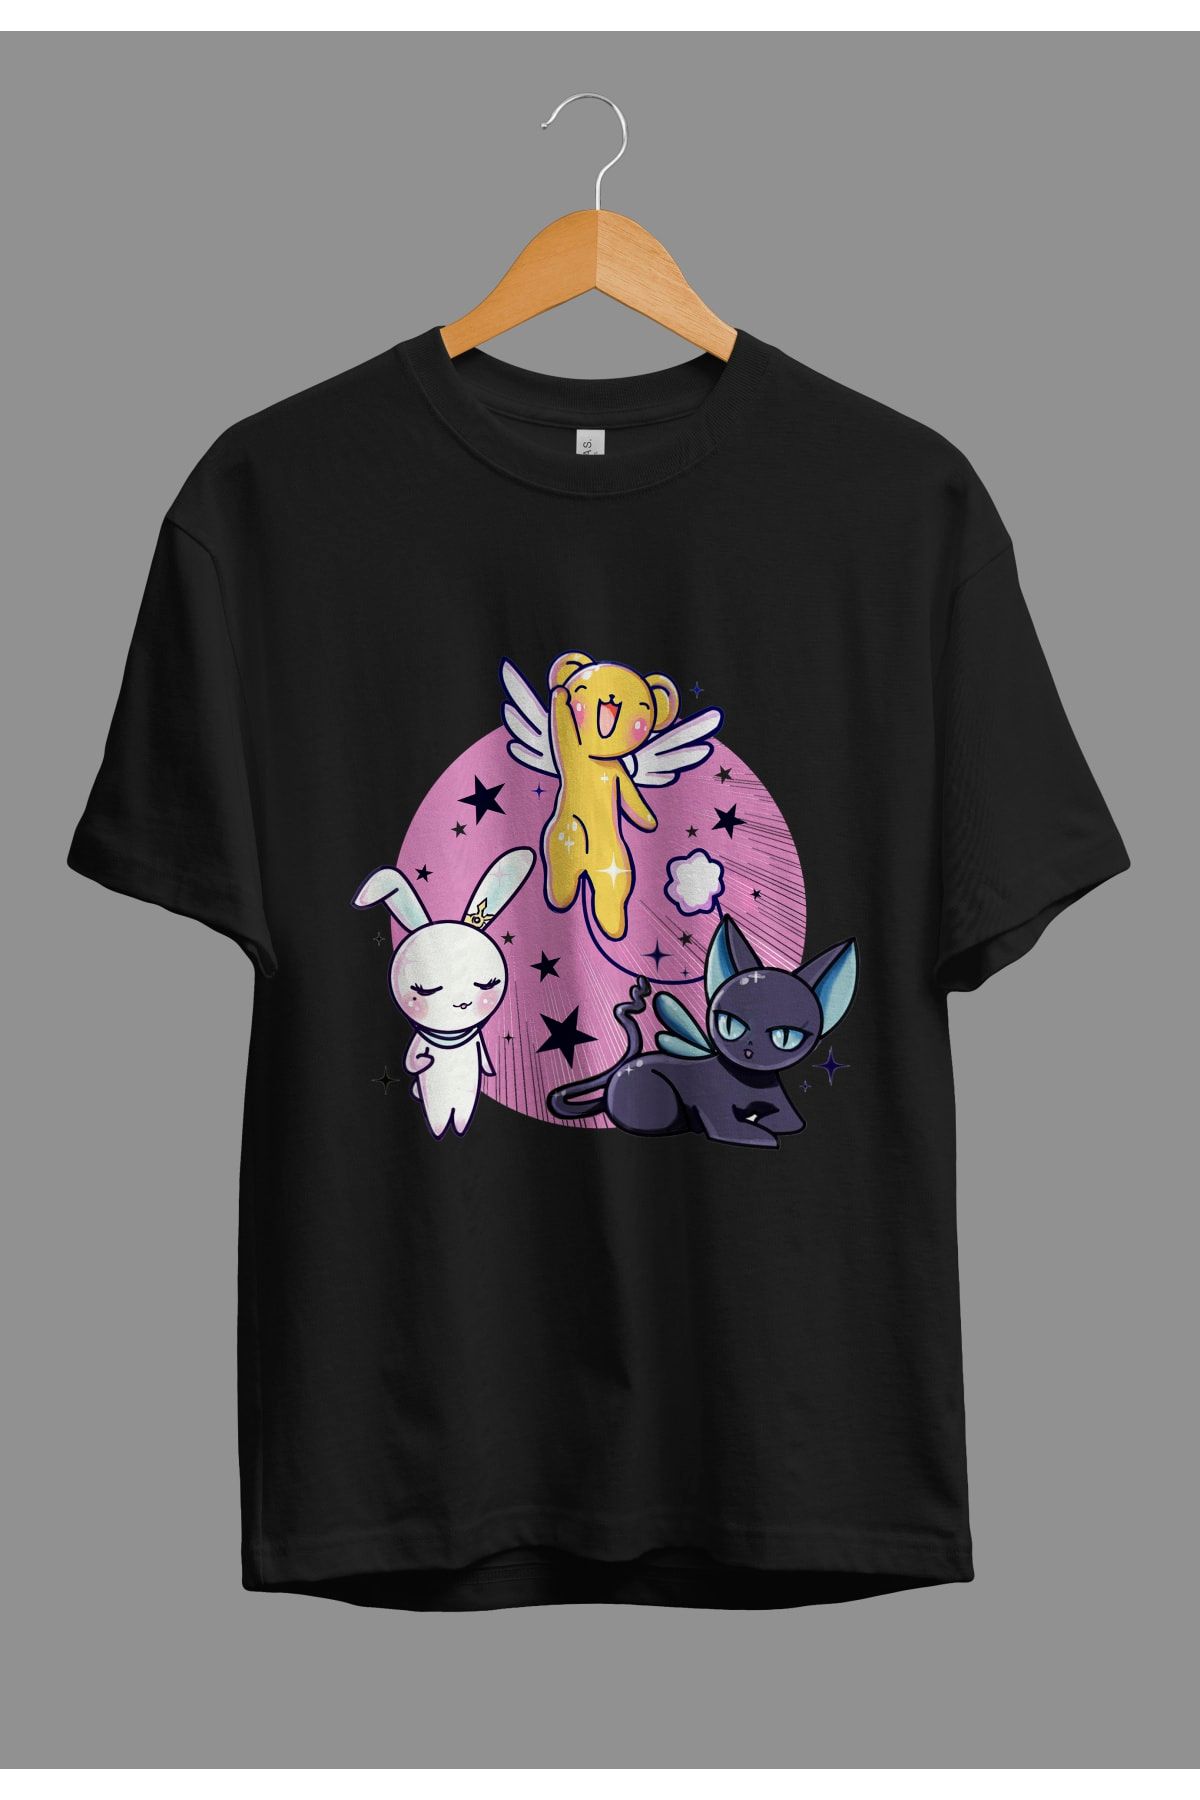 Corvo Oversize Cardcaptor Sakura Spinel Sun, Momo Ve Cerberus Anime Karakter Baskılı Özel Tasarım Tişört